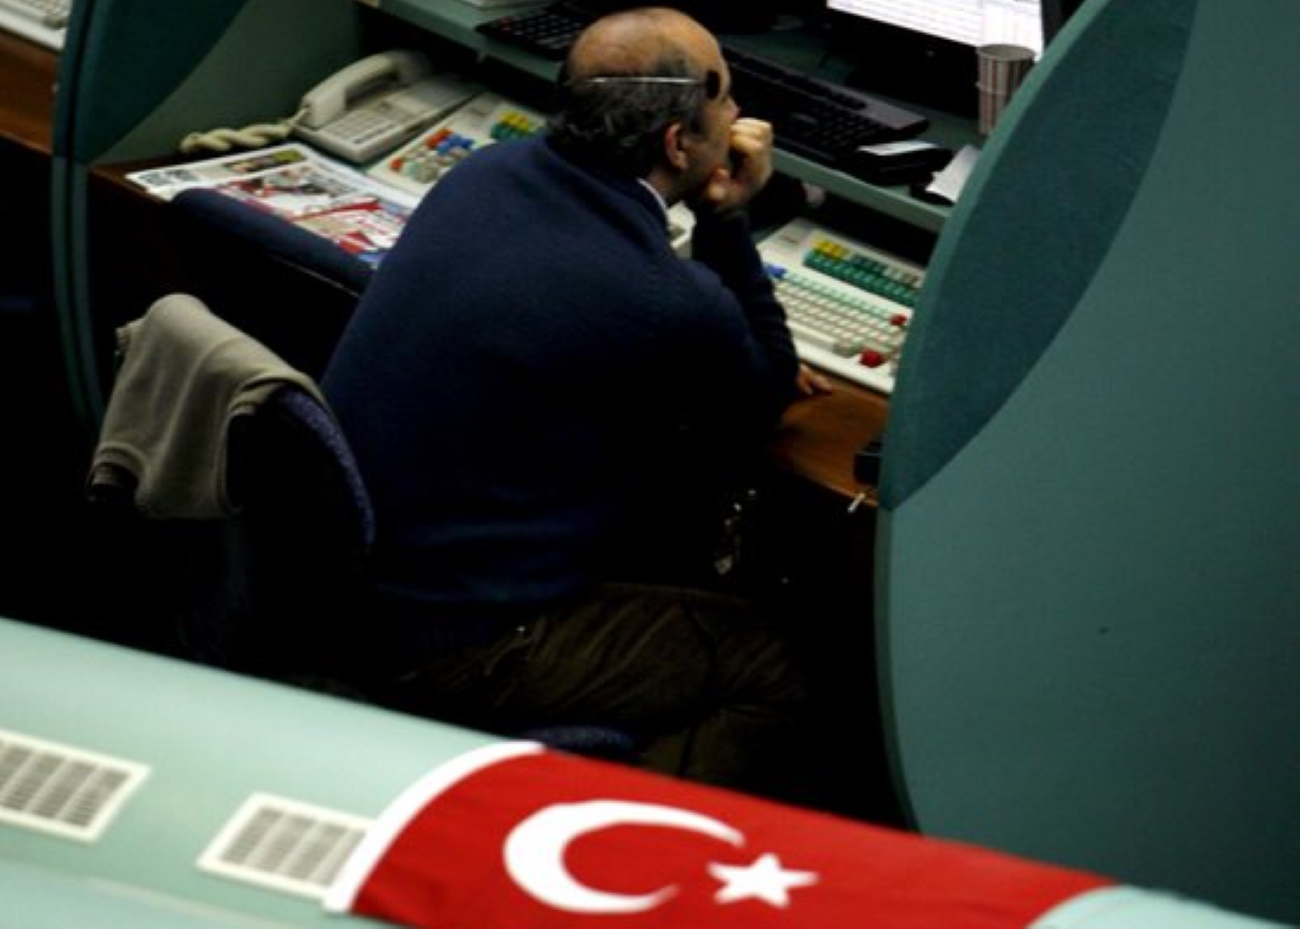 Σεισμός στην Τουρκία: Το Χρηματιστήριο της Κωνσταντινούπολης διακόπτει προσωρινά τη λειτουργία του